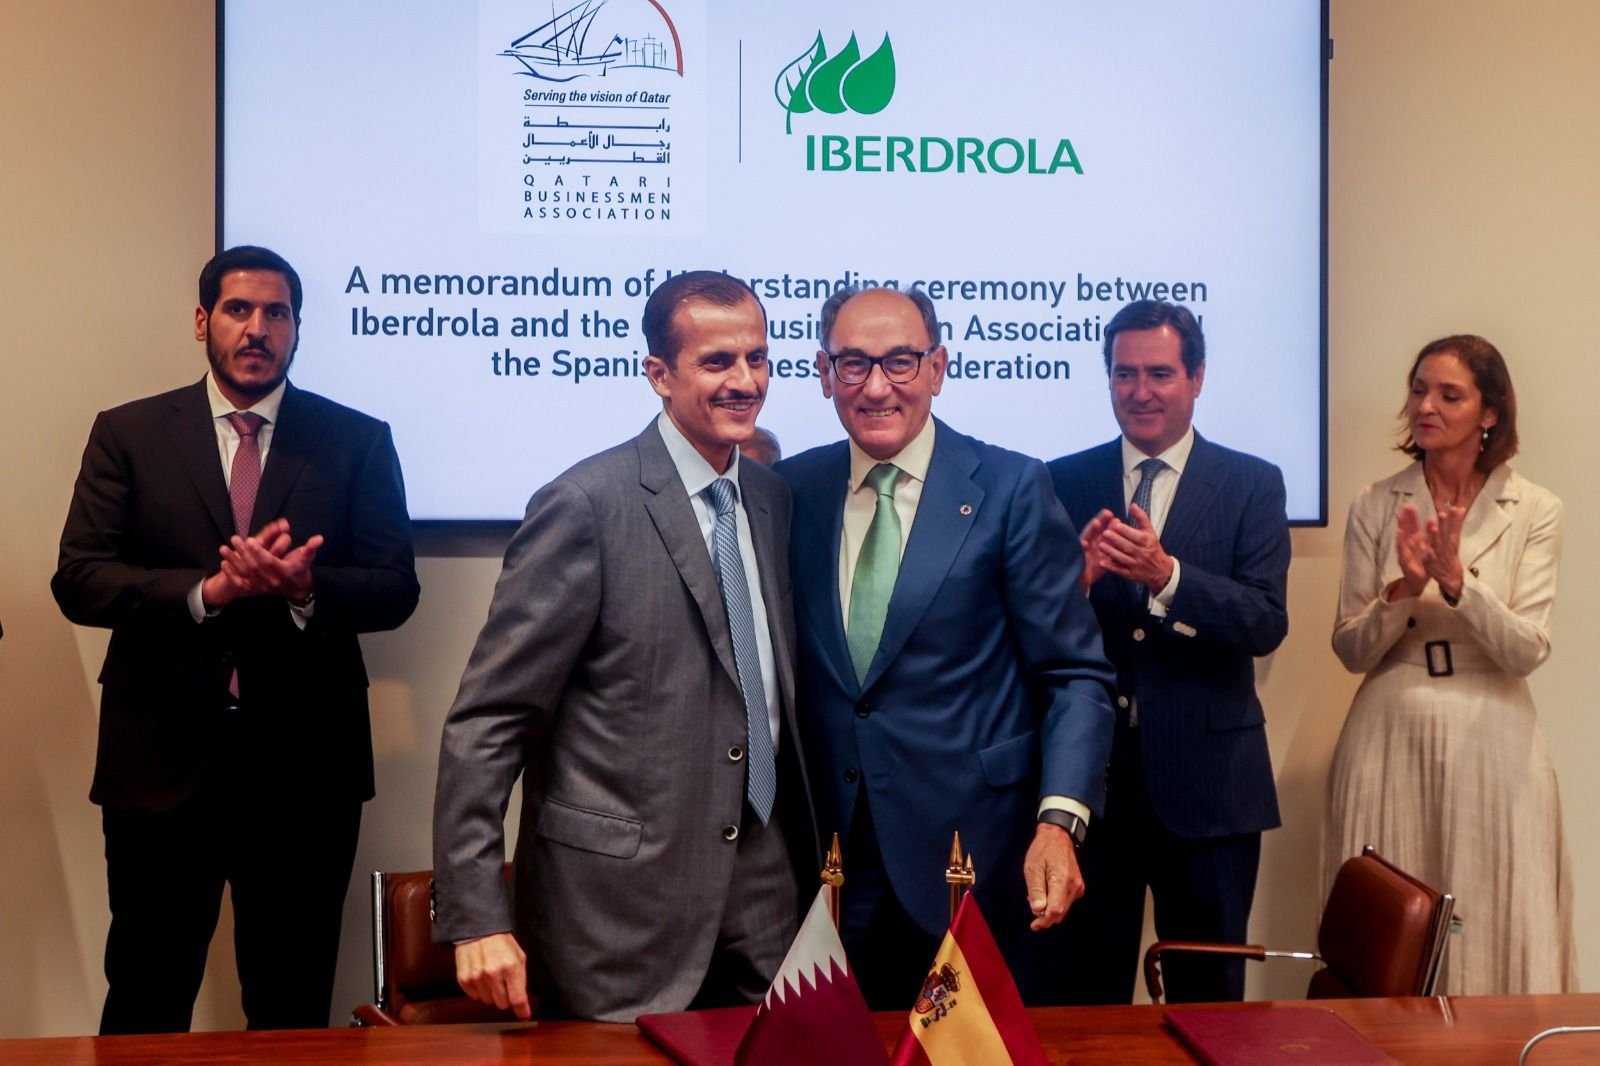 Acuerdo entre Iberdrola y Qatar